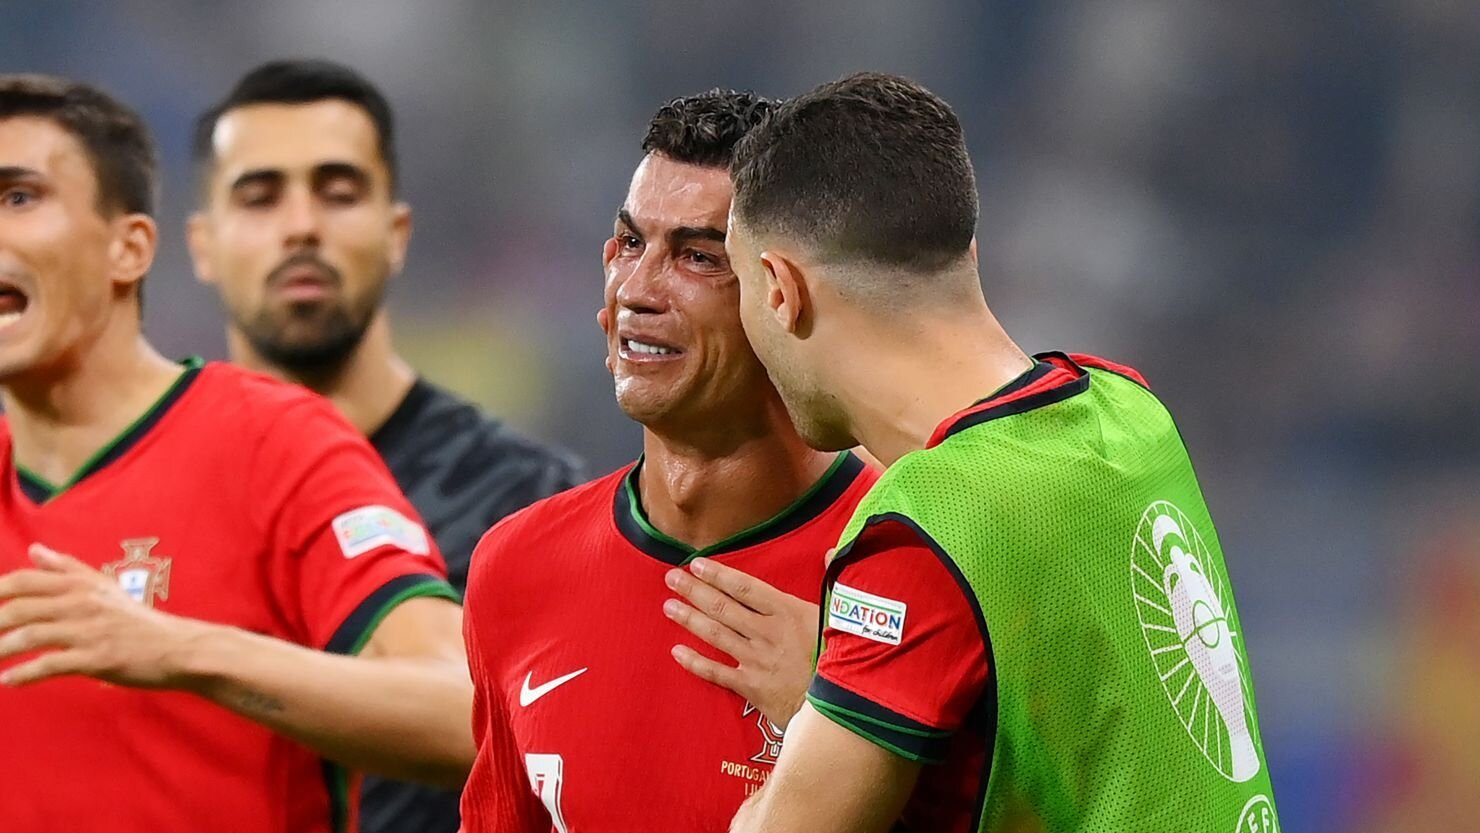 Ronaldo bật khóc khi sút hỏng phạt đền.